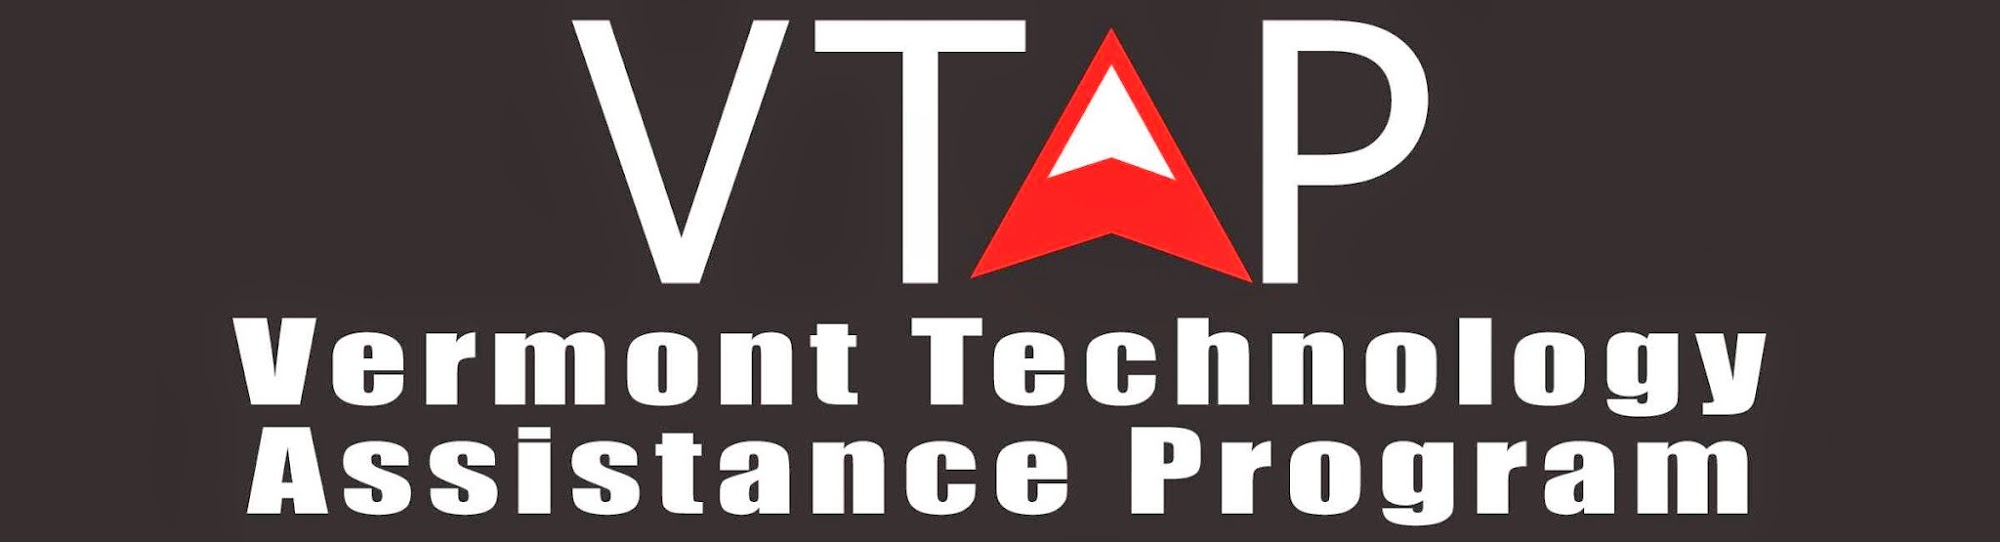 Vermont Technology Assistance Program - VTAP